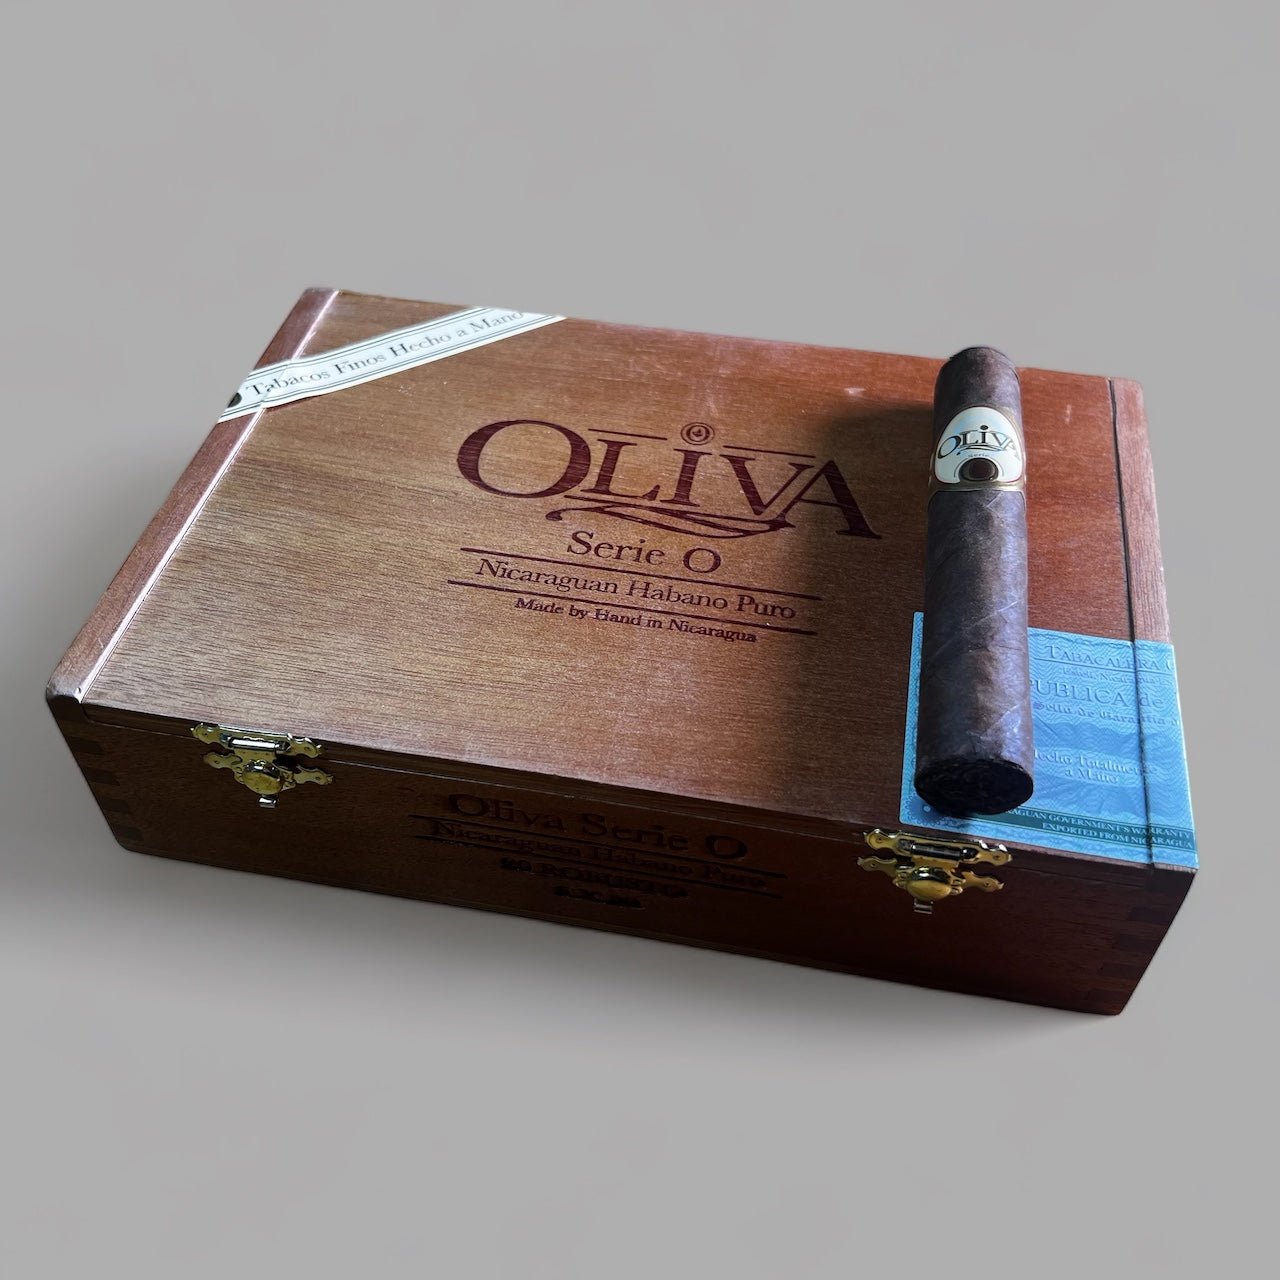 Oliva Serie O Robusto - Cigar 30